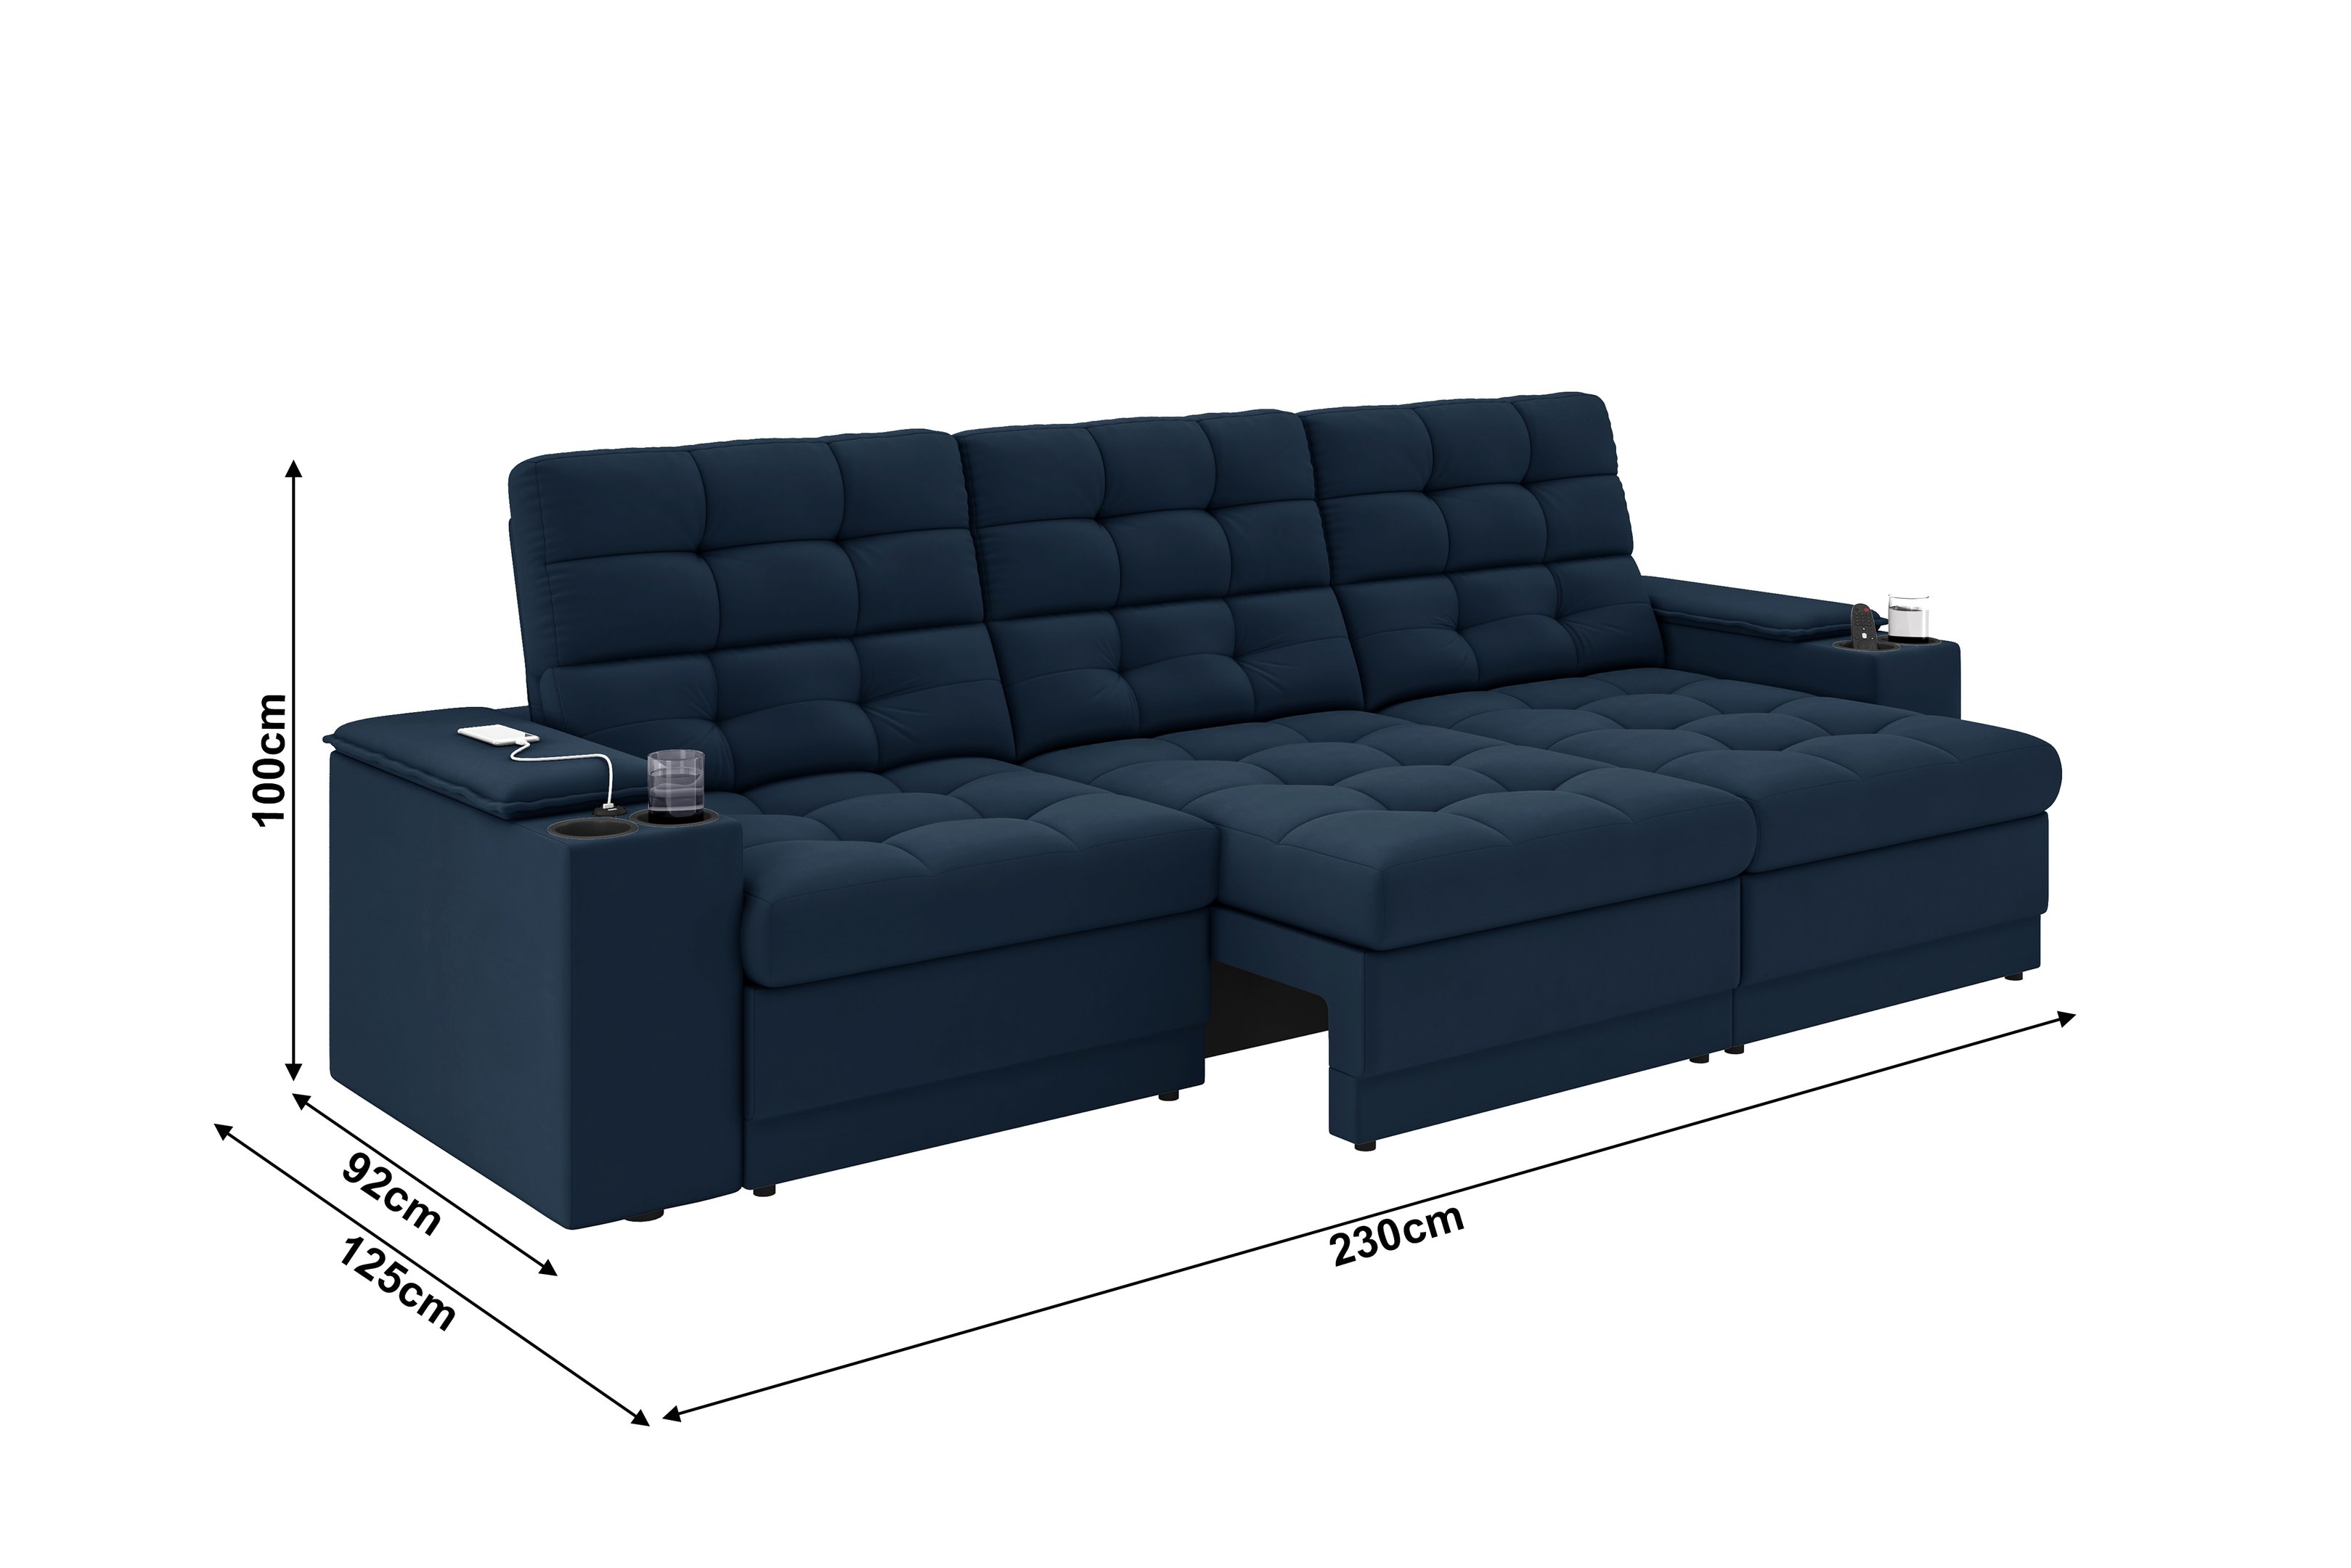 Sofá Confort Premium 2,30m Assento Retrátil/reclinável Porta Copos e Usb Suede Petróleo - Xflex - 2